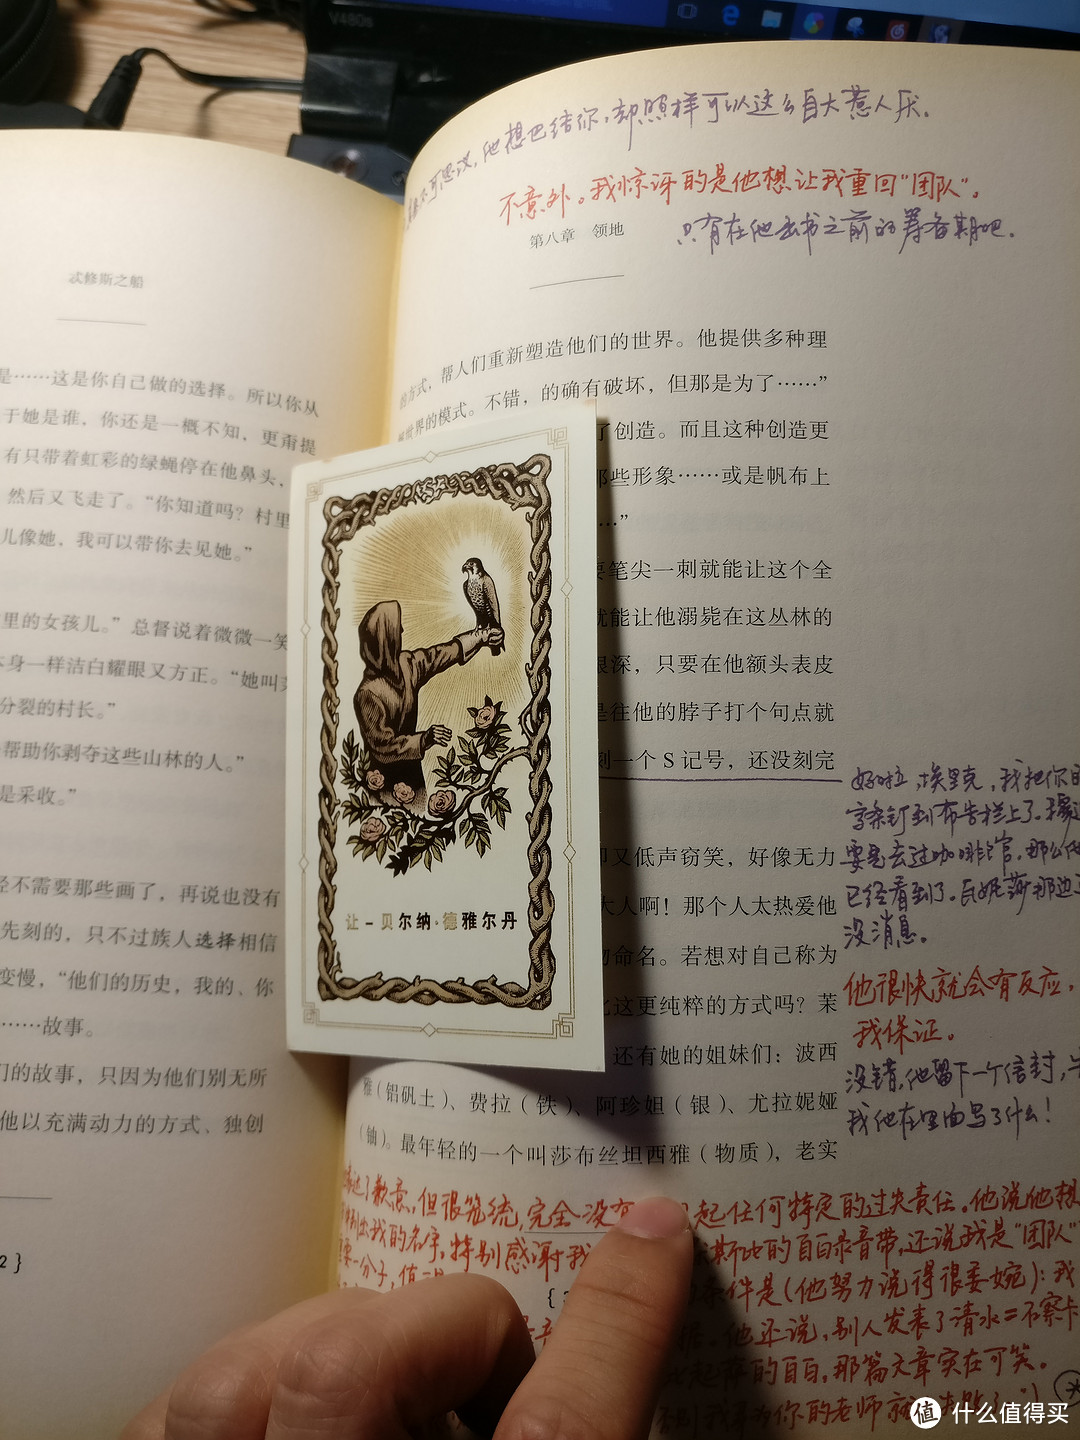 一本捡来的破书：《S. 忒修斯之船》简体中文典藏复刻版 晒单